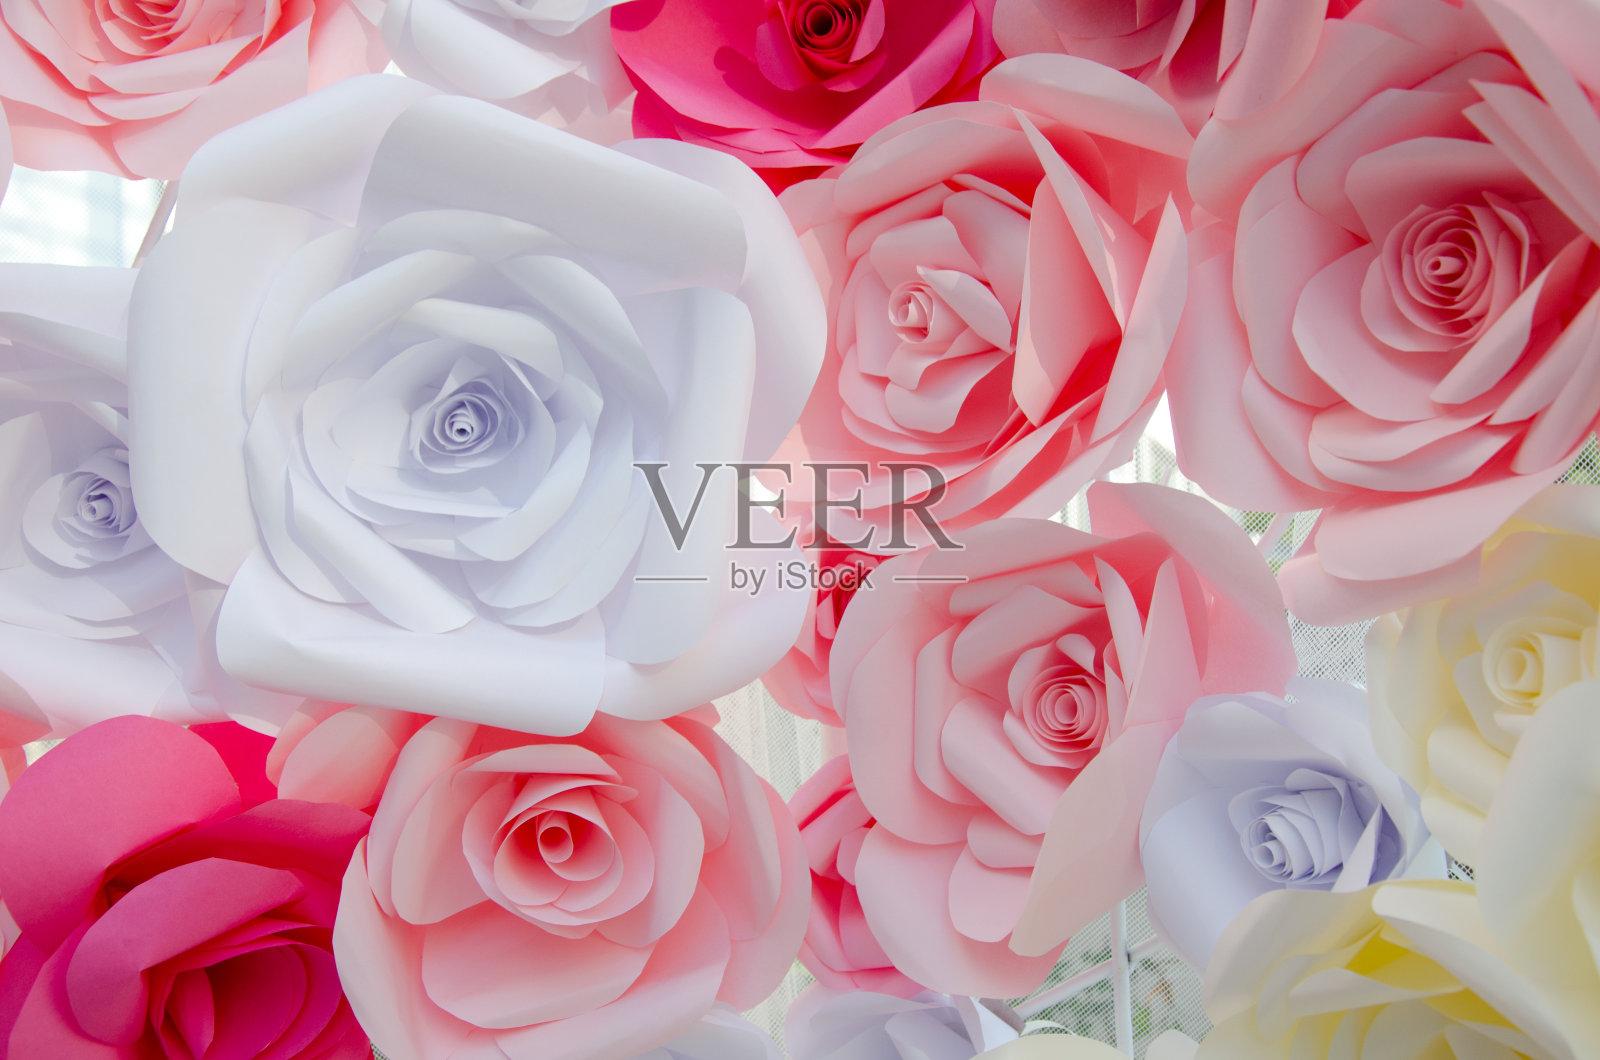 一束彩色的折纸玫瑰形成花卉背景照片摄影图片